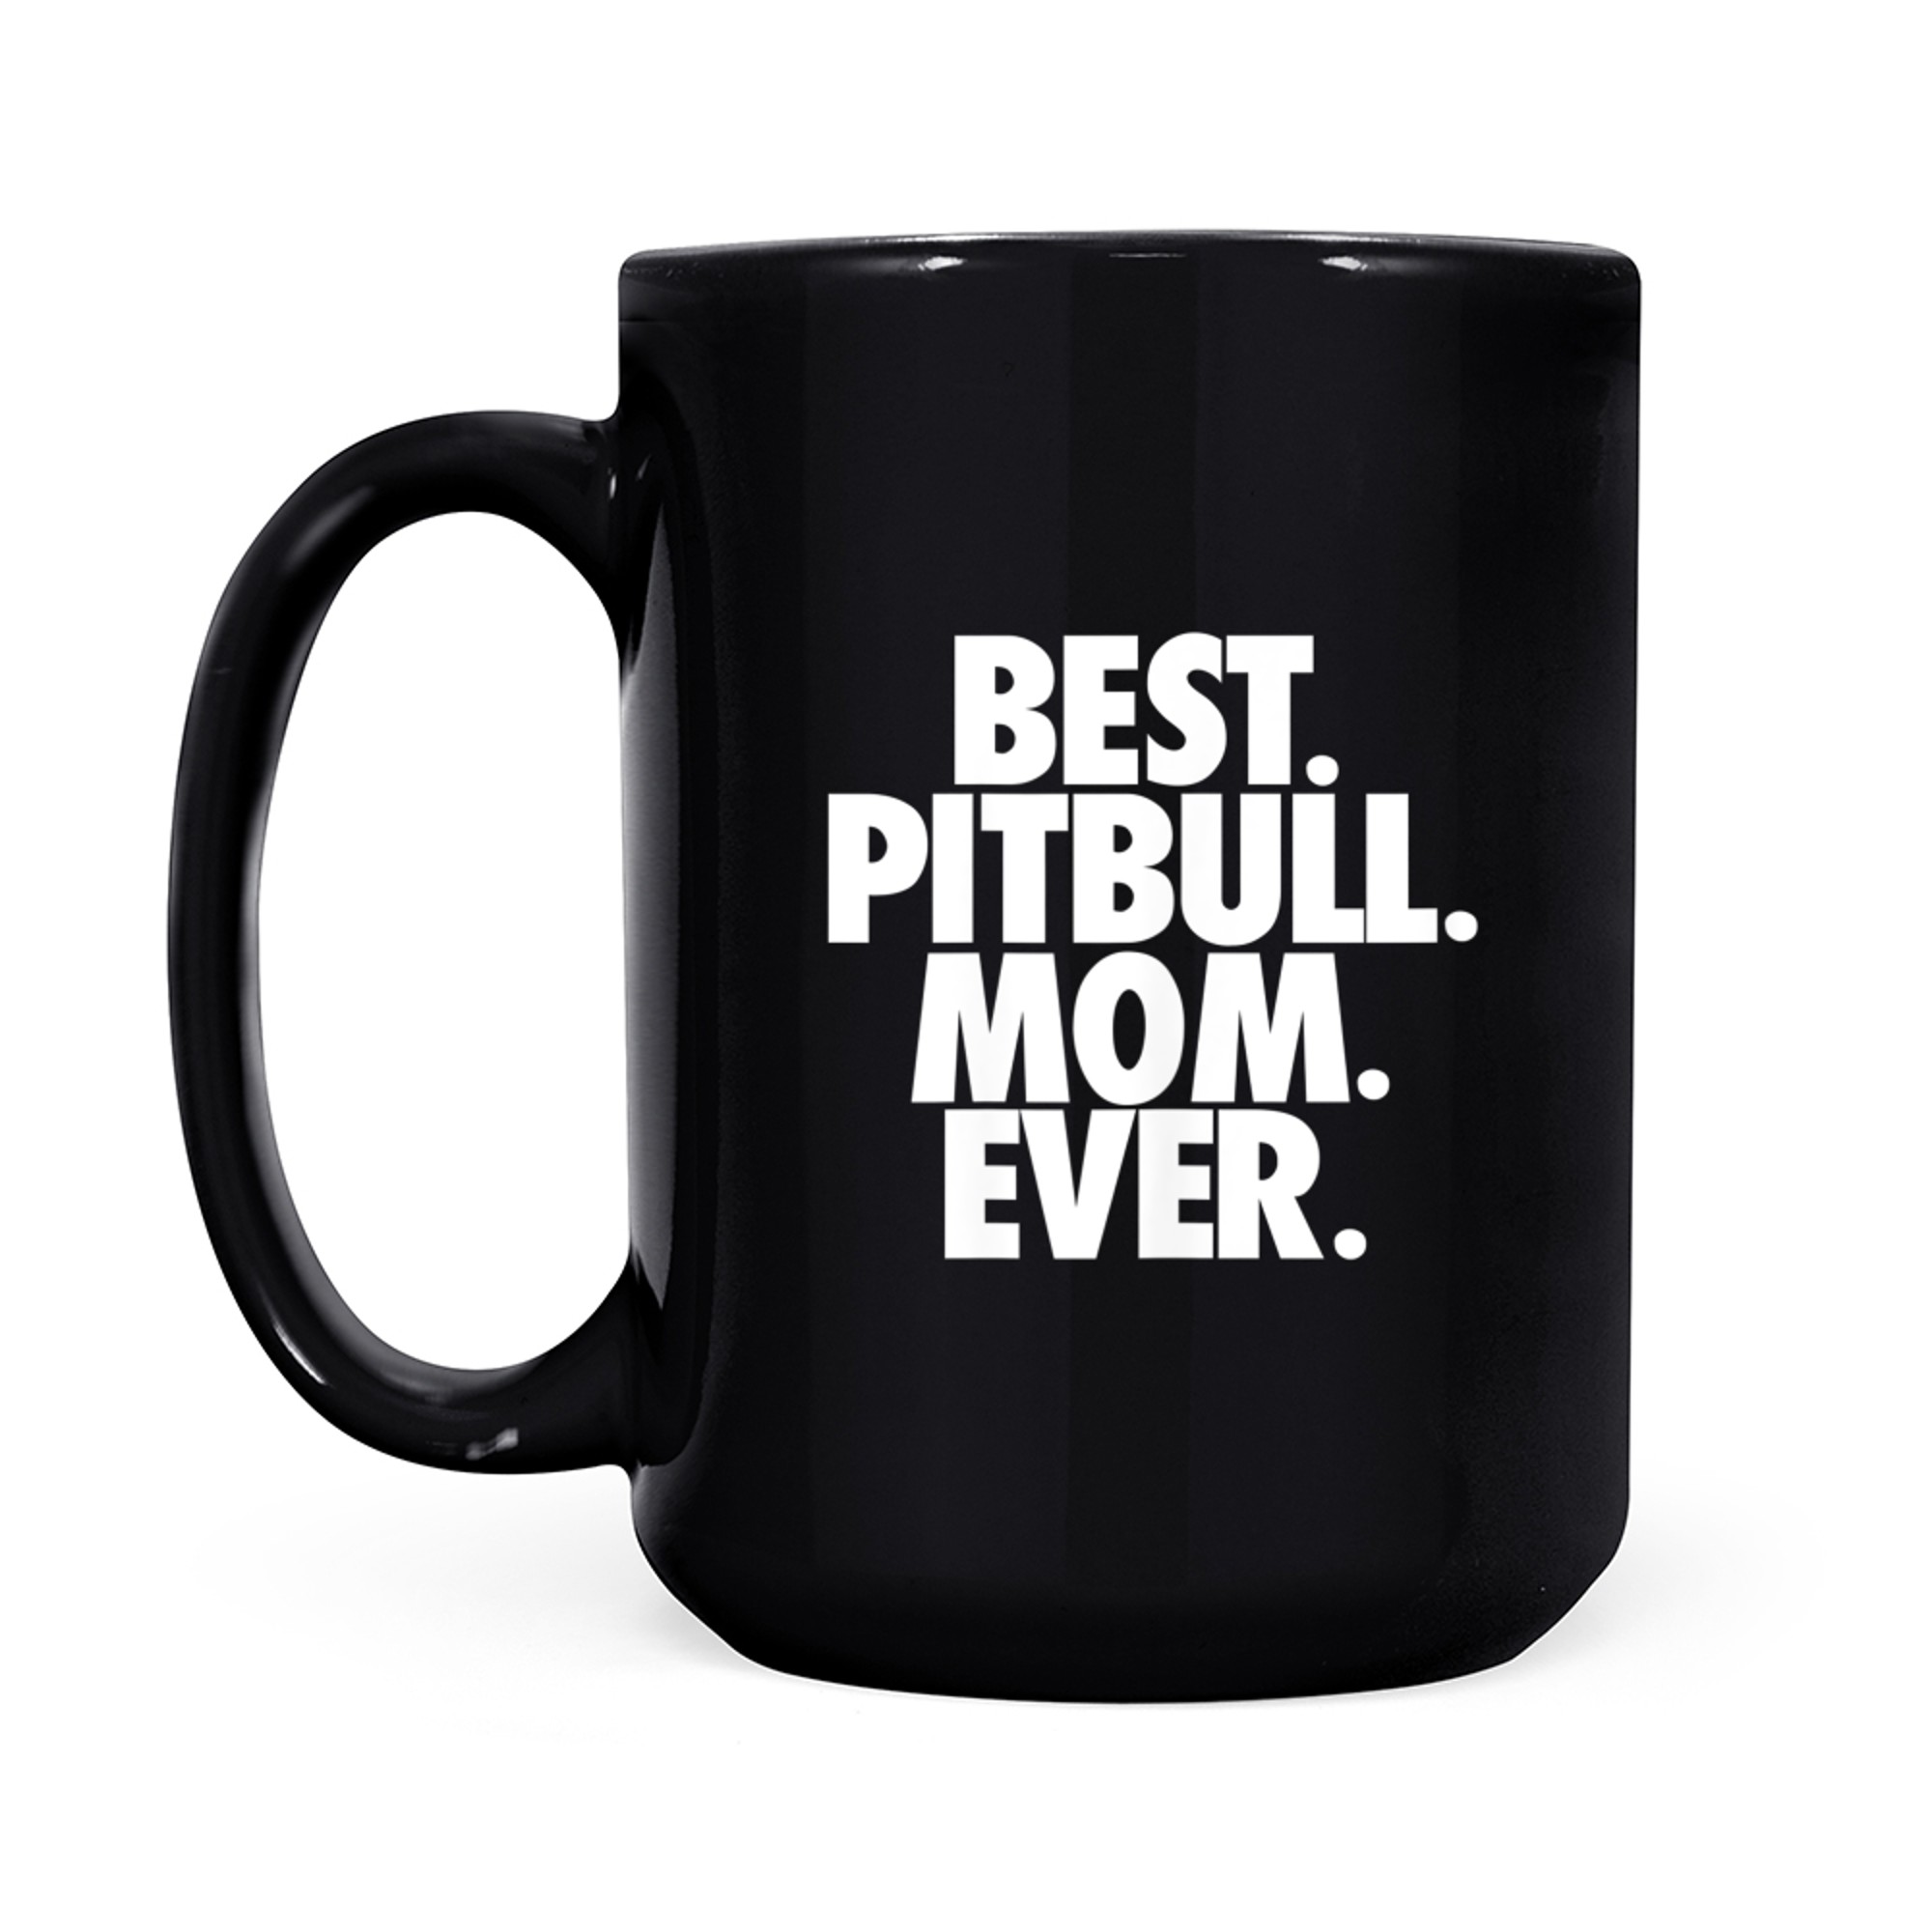 Best Pitbull Mom Ever - Pitbull Mother Dog Gift mug black